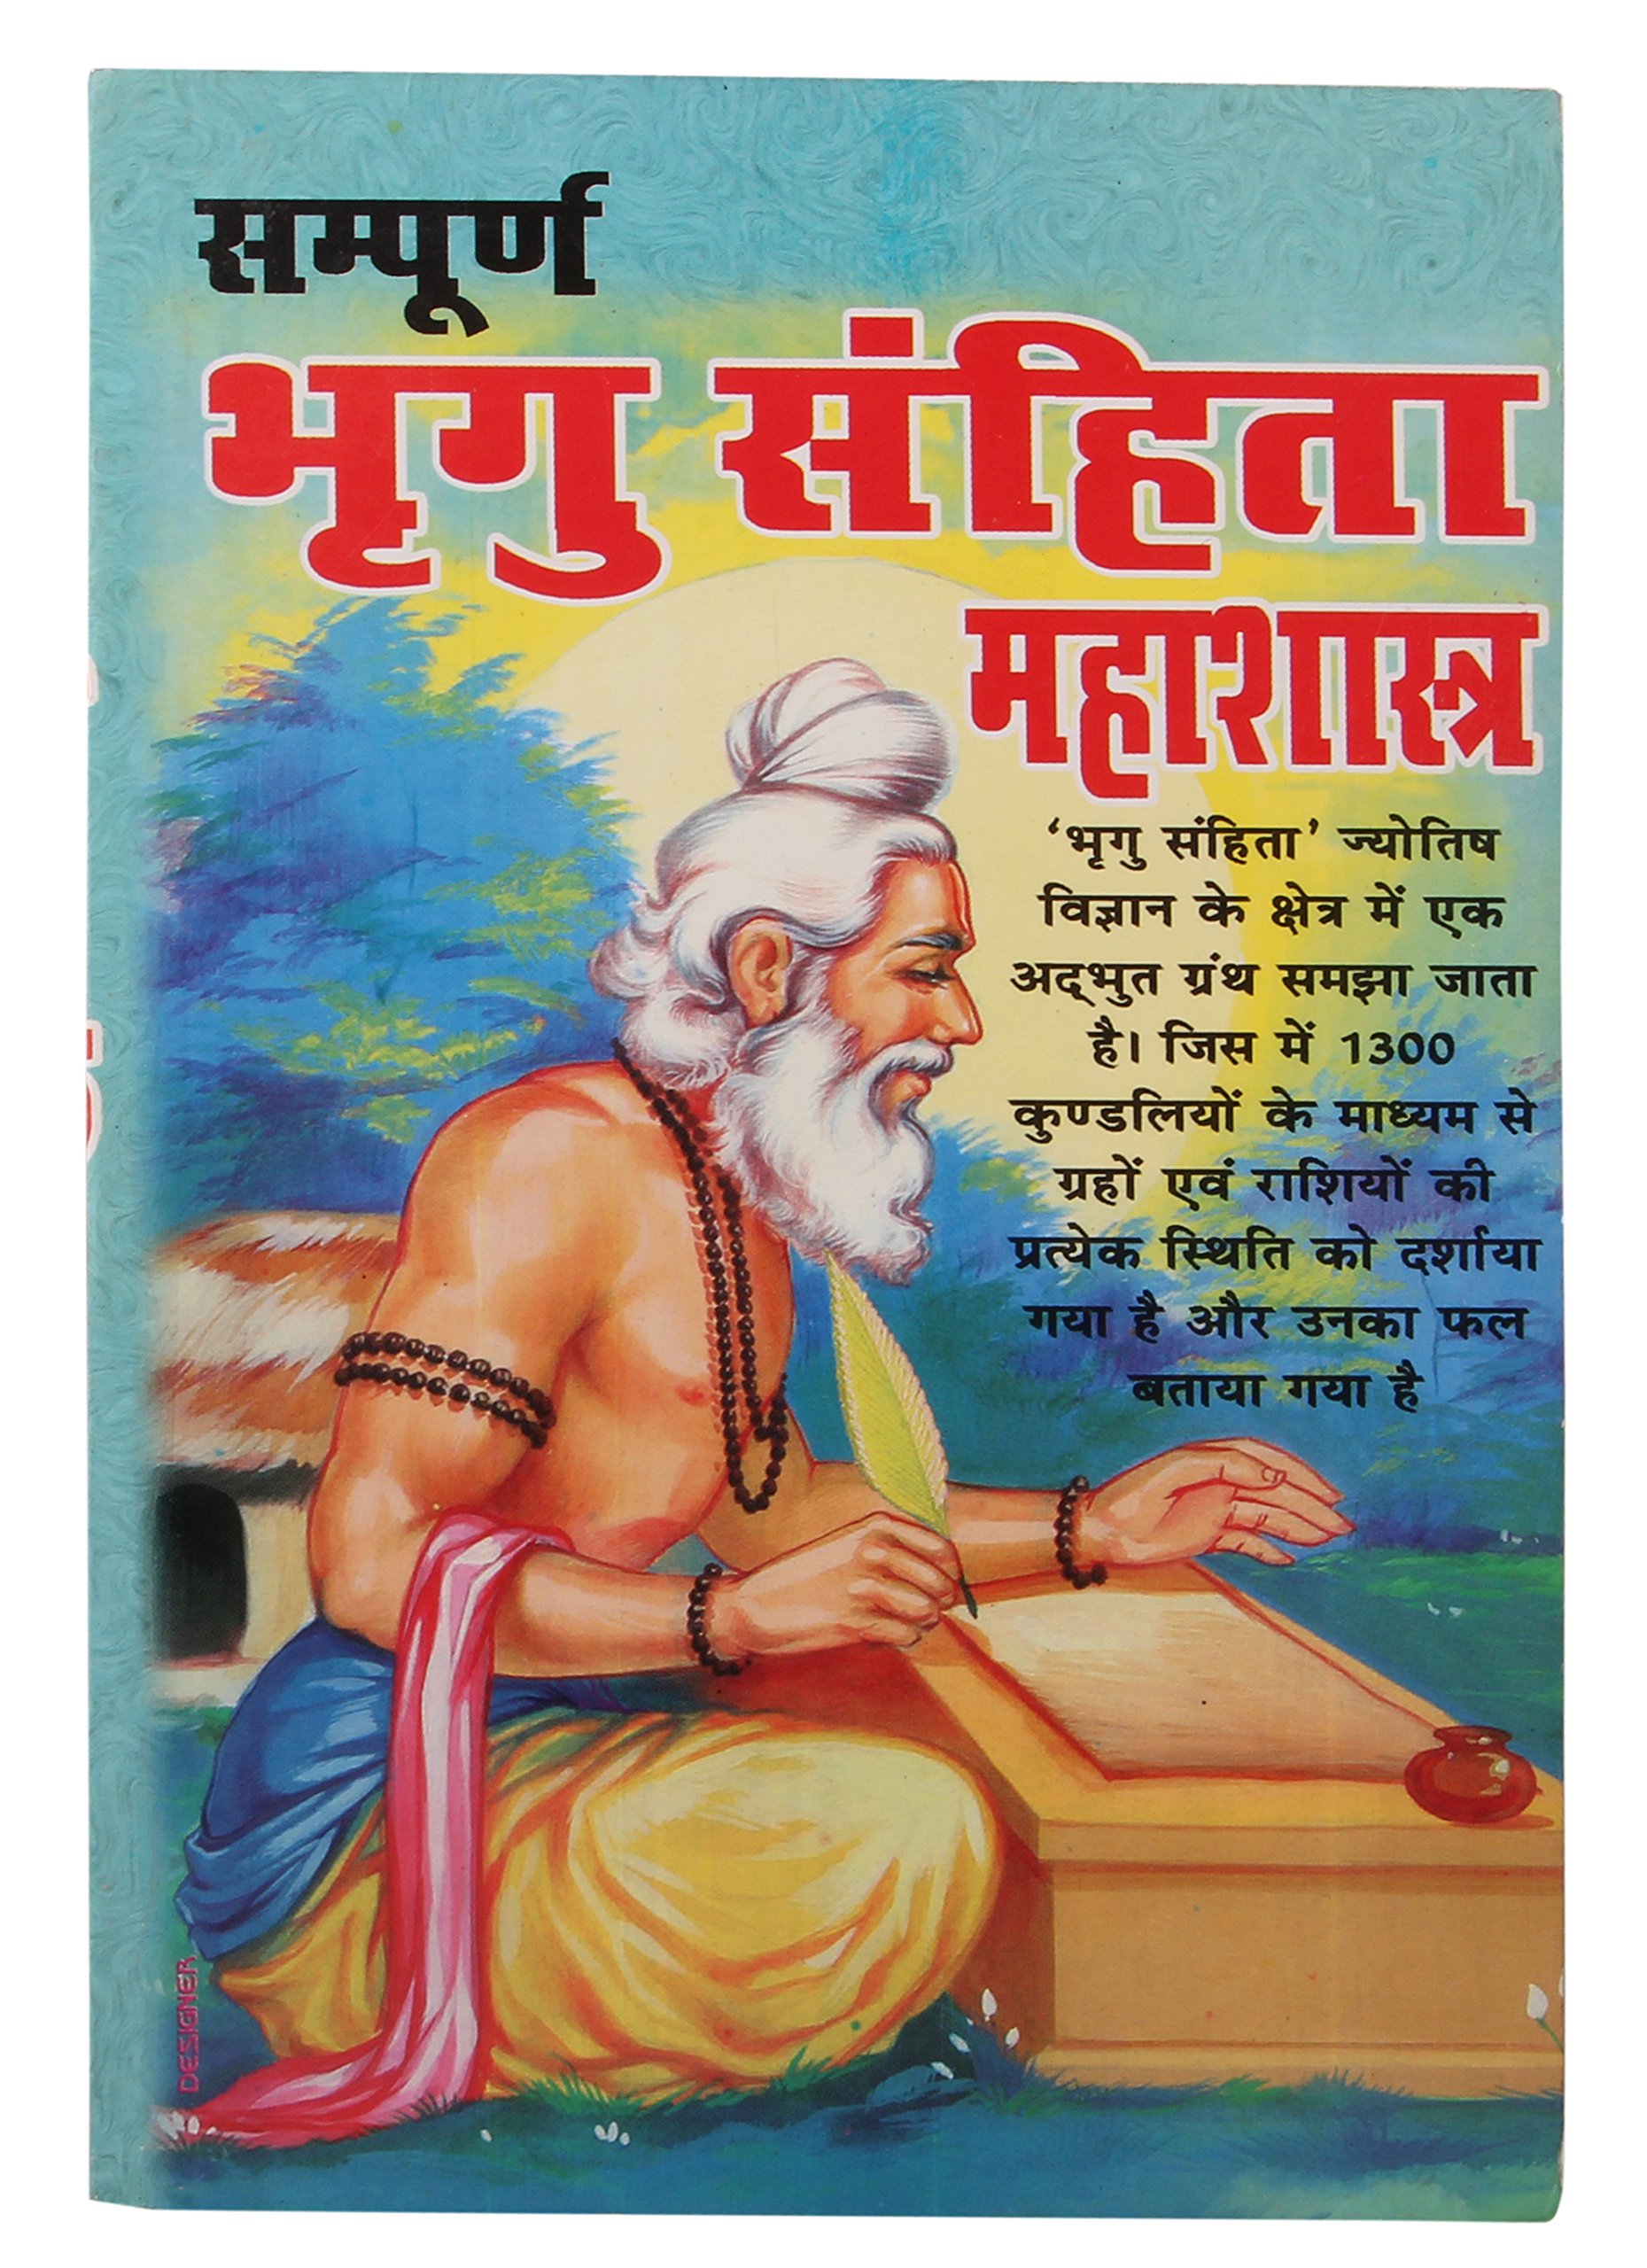 Bhrigu samhita hindi pdf